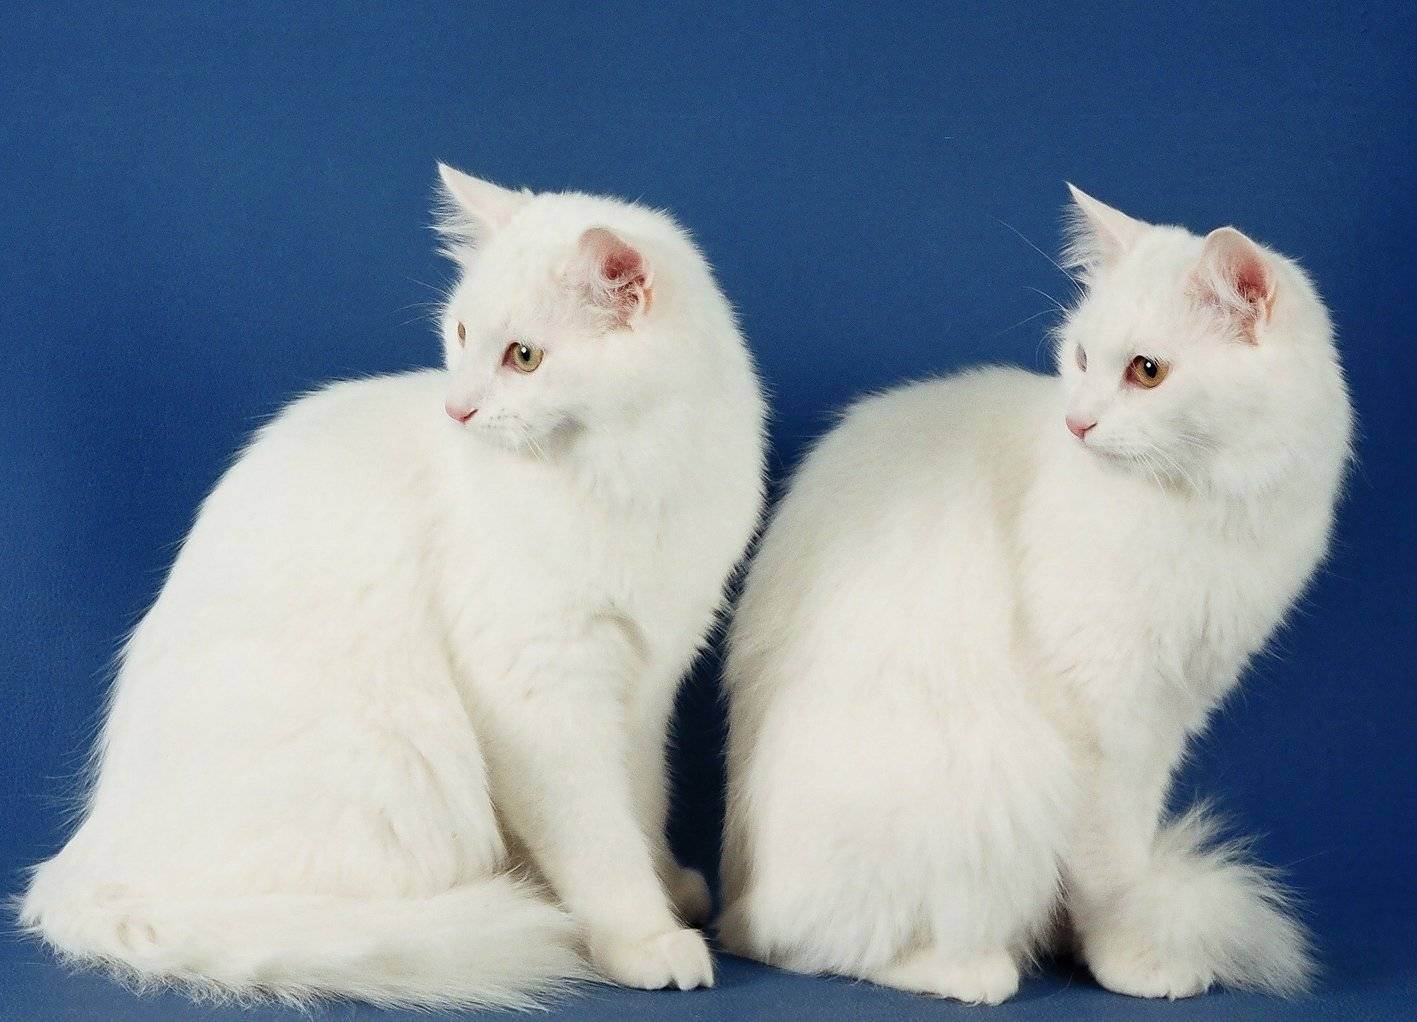 Турецкая ангора (ангорская кошка): фото, описание, характер, содержание, отзывы